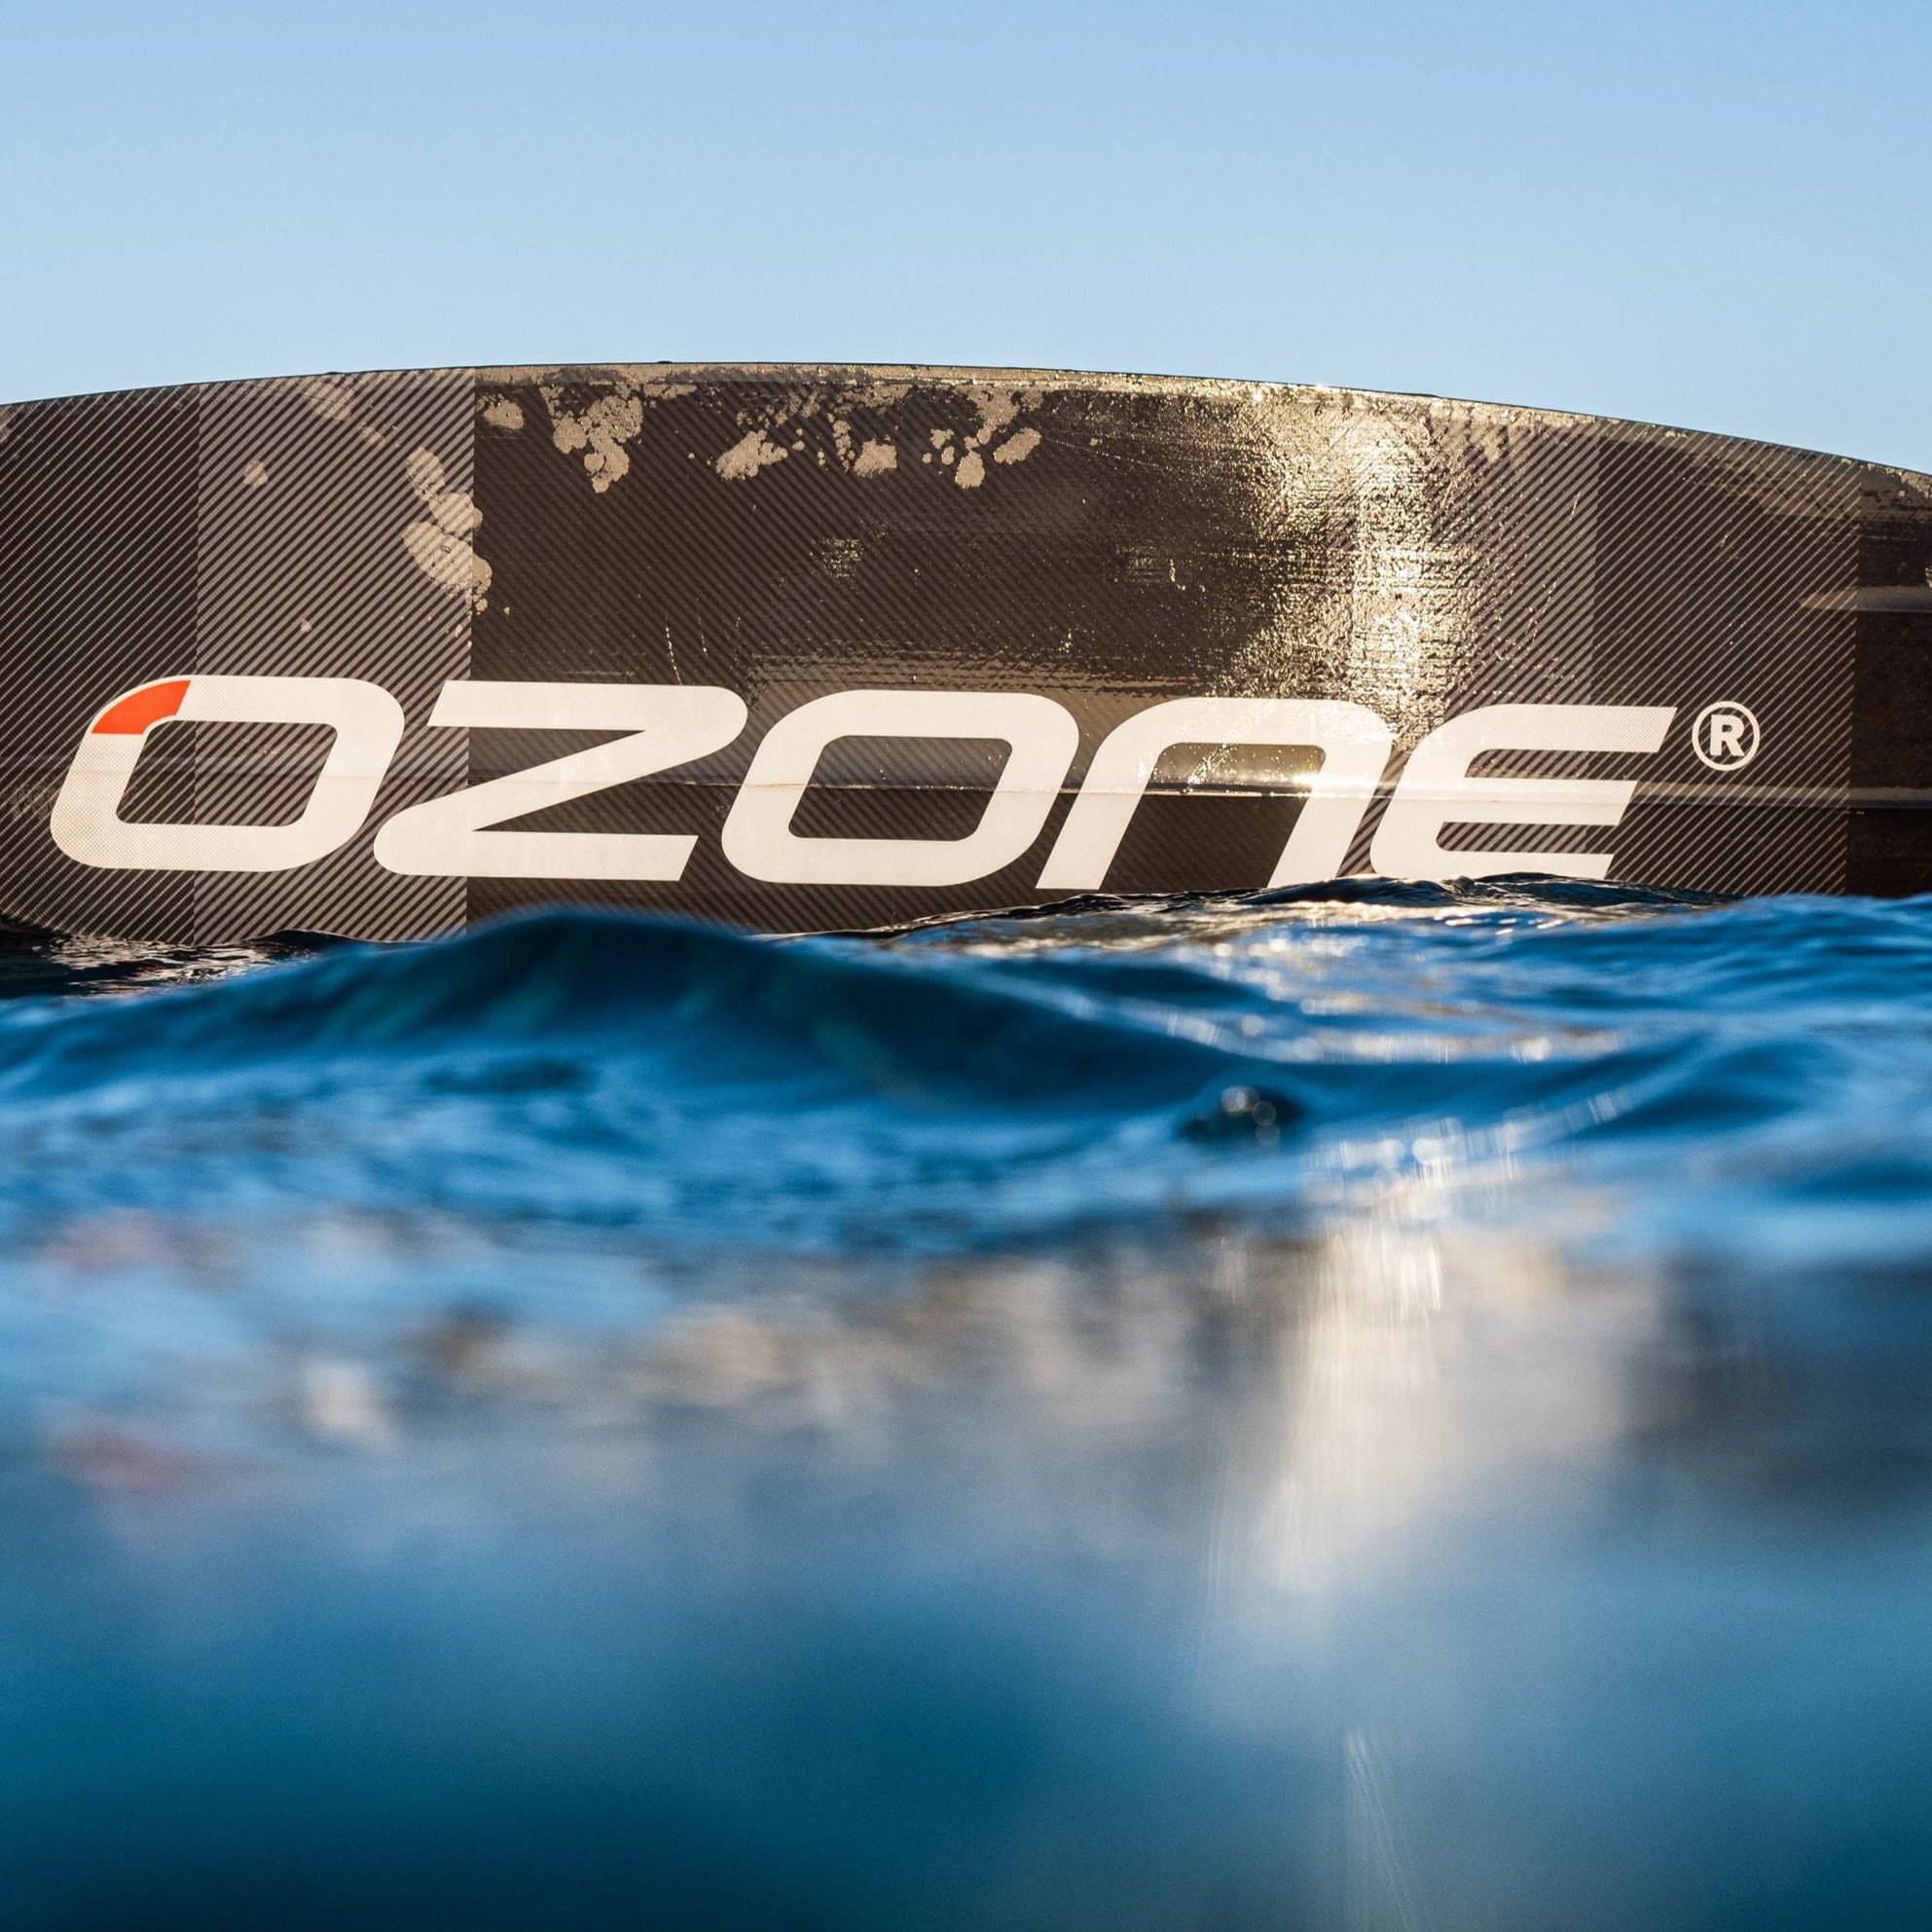 black Ozone Code v3 kitesurfing board in water